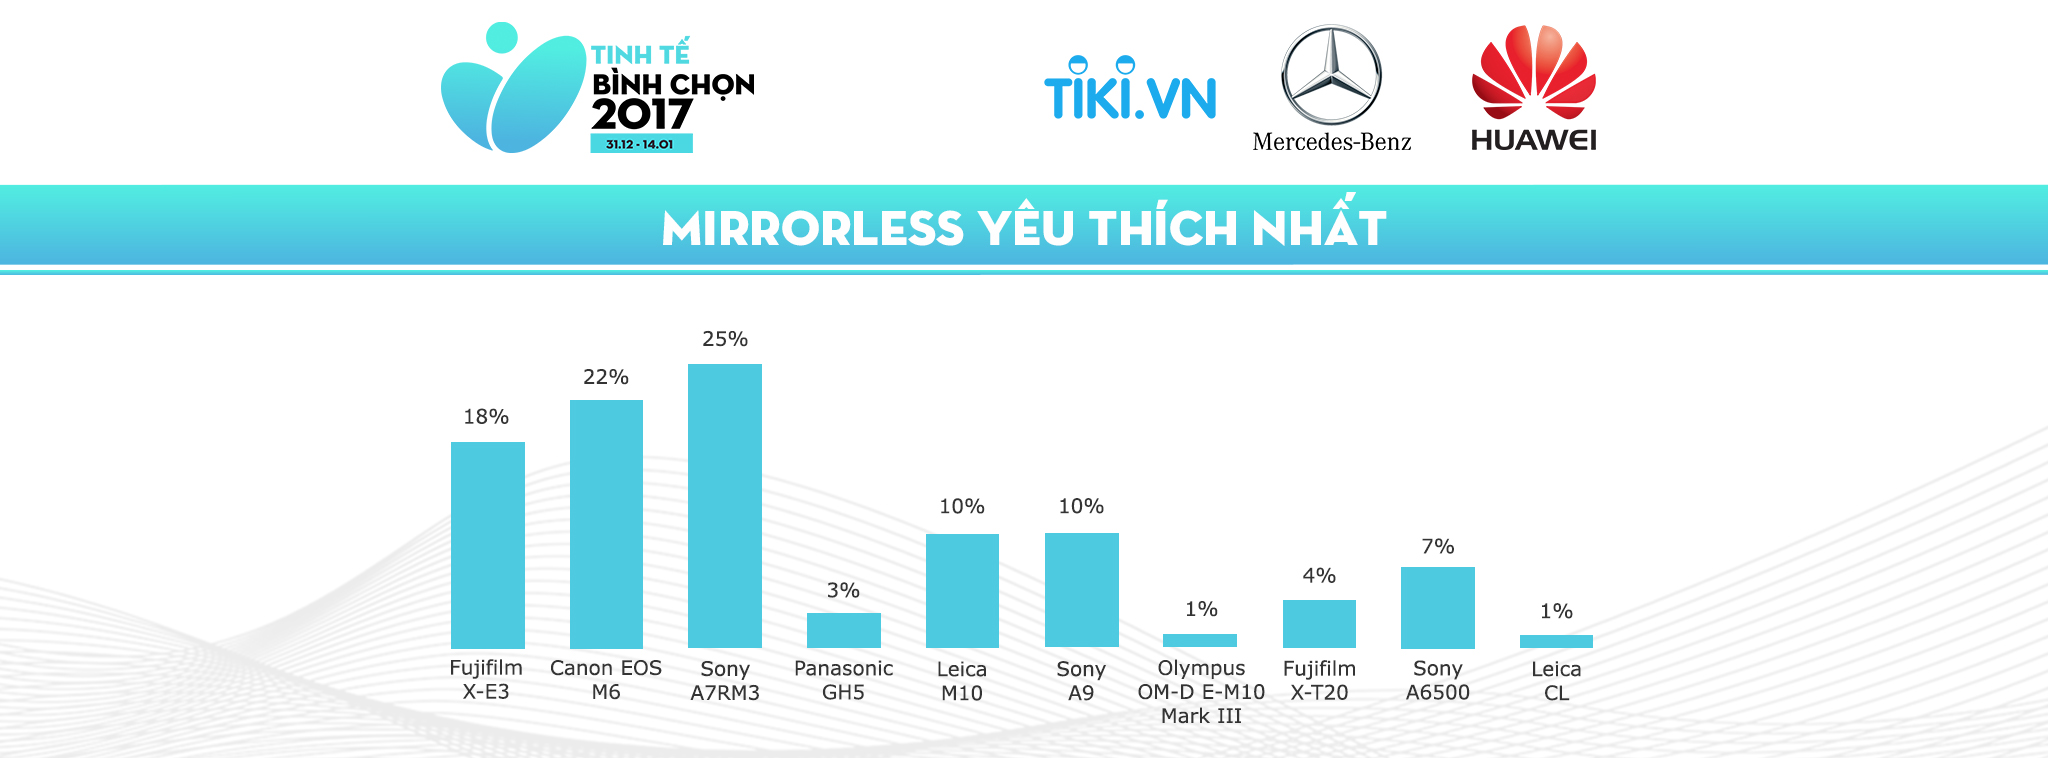 [TTBC17] Kết quả hạng mục máy ảnh: Nikon D850 chiến thắng cách biệt, iPhone X được yêu thích nhất